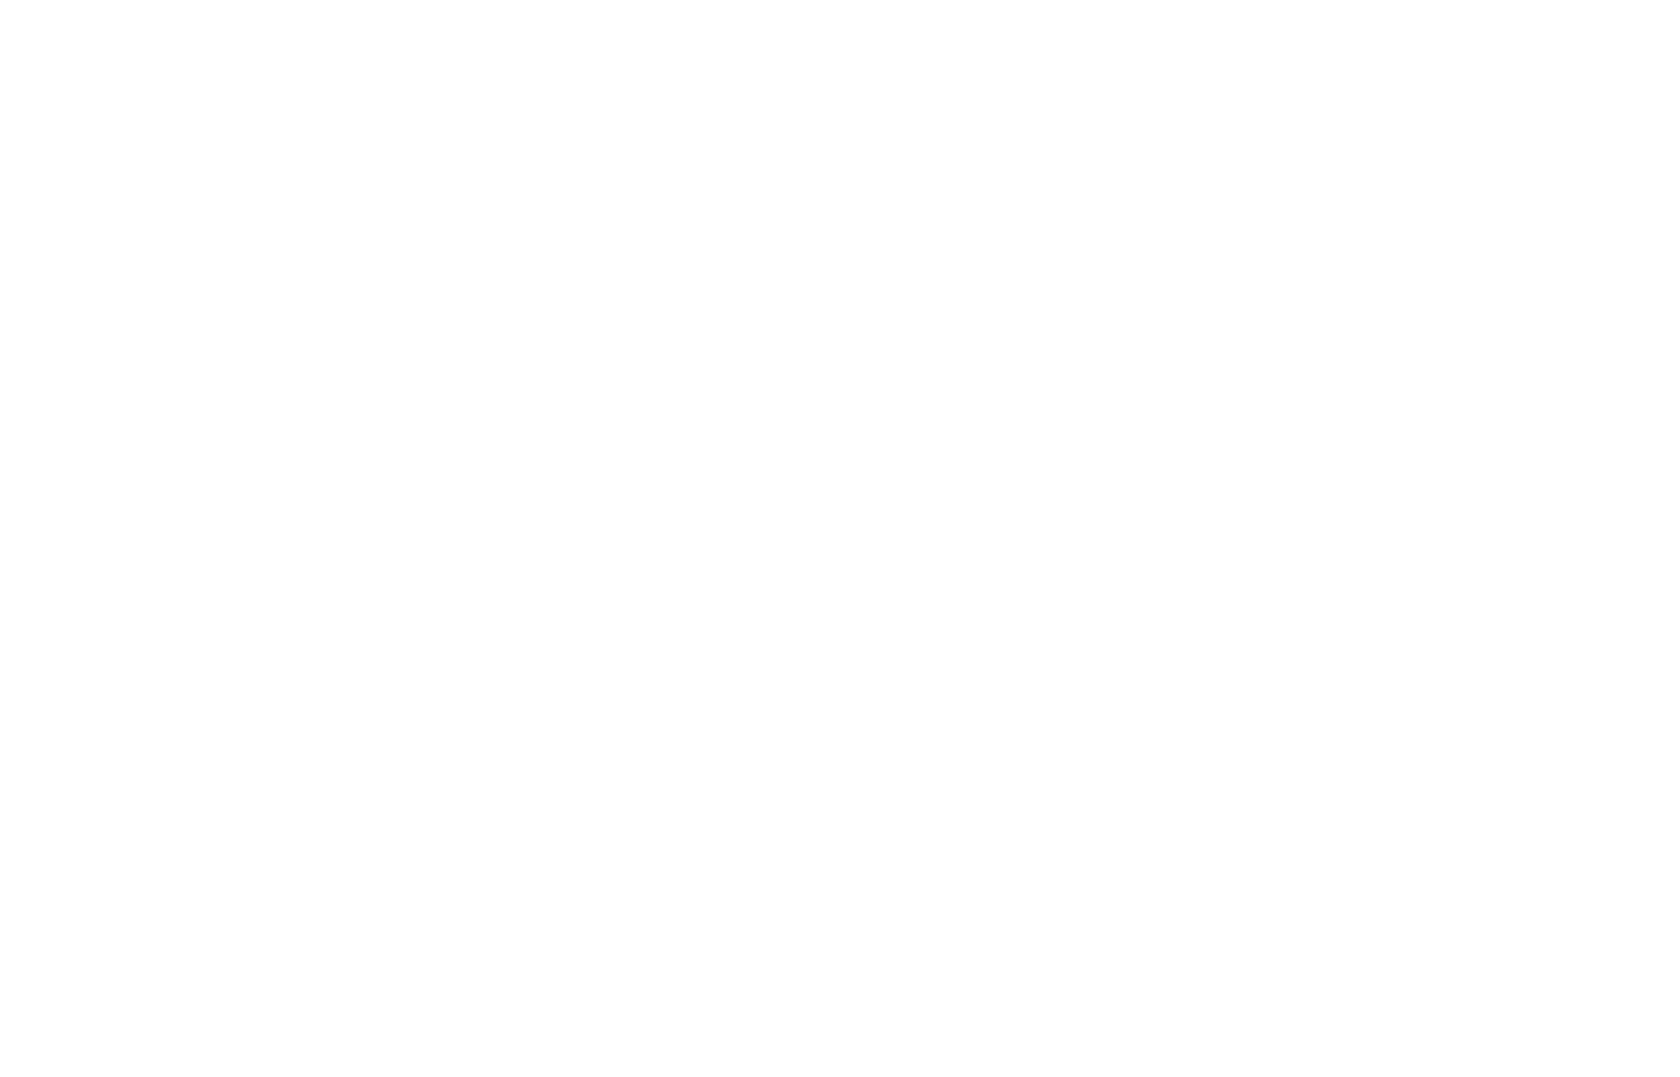 Пример брендбука сети аптек — Логотип допустимое применение на сложном фоне